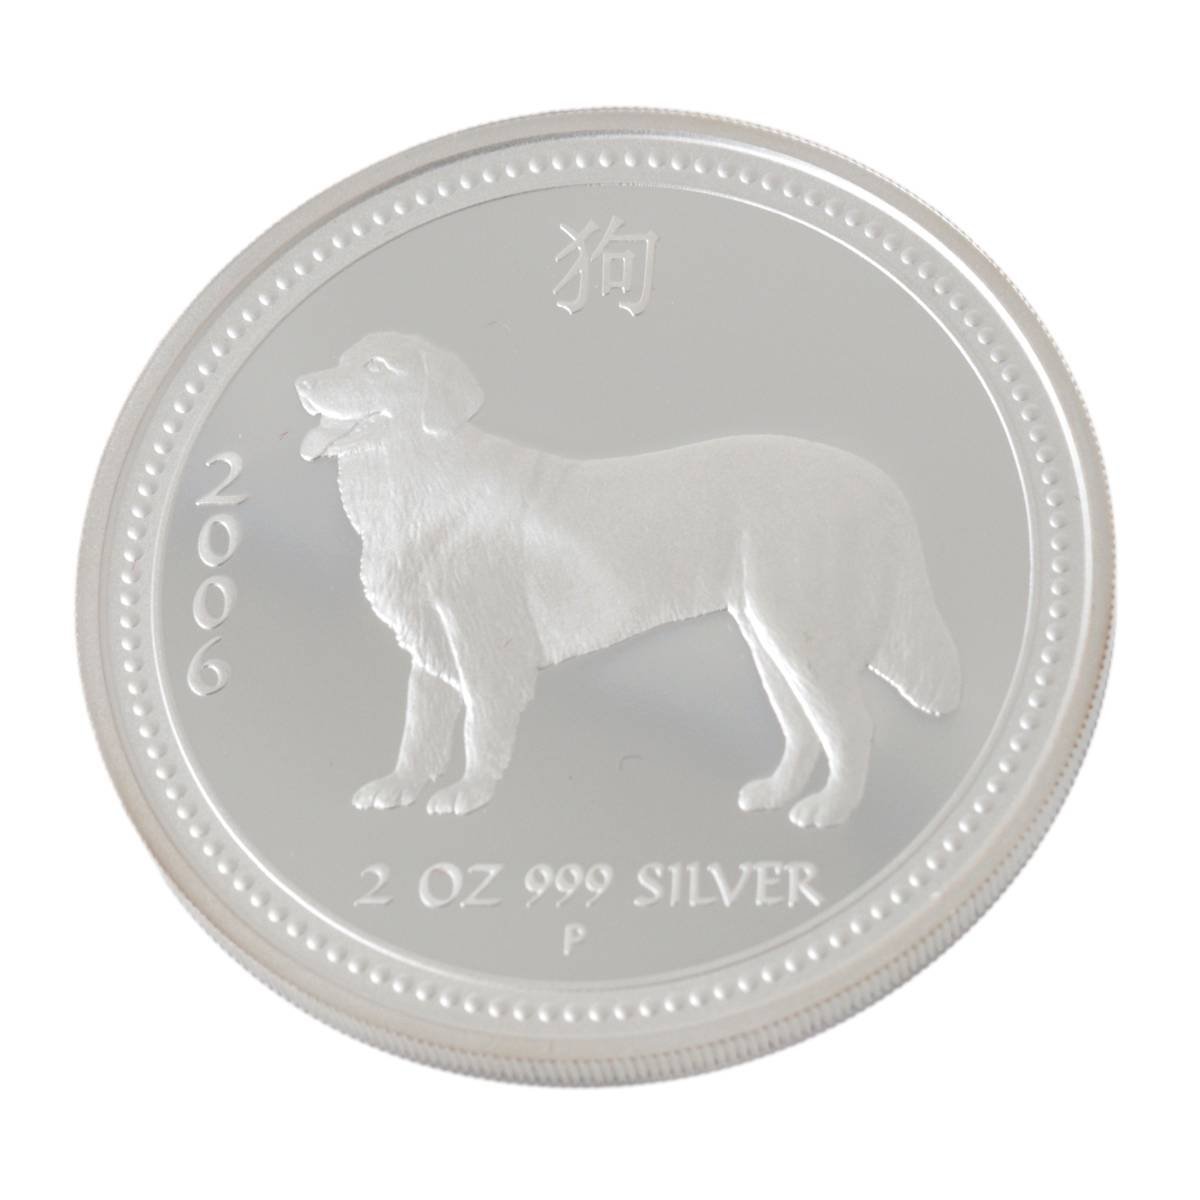 オーストラリア 干支 2006 犬 2ドル銀貨 純銀 2oz Sv999 純銀 ケース、証明書 直径49.7mm 重量62.3g Bランク_画像4